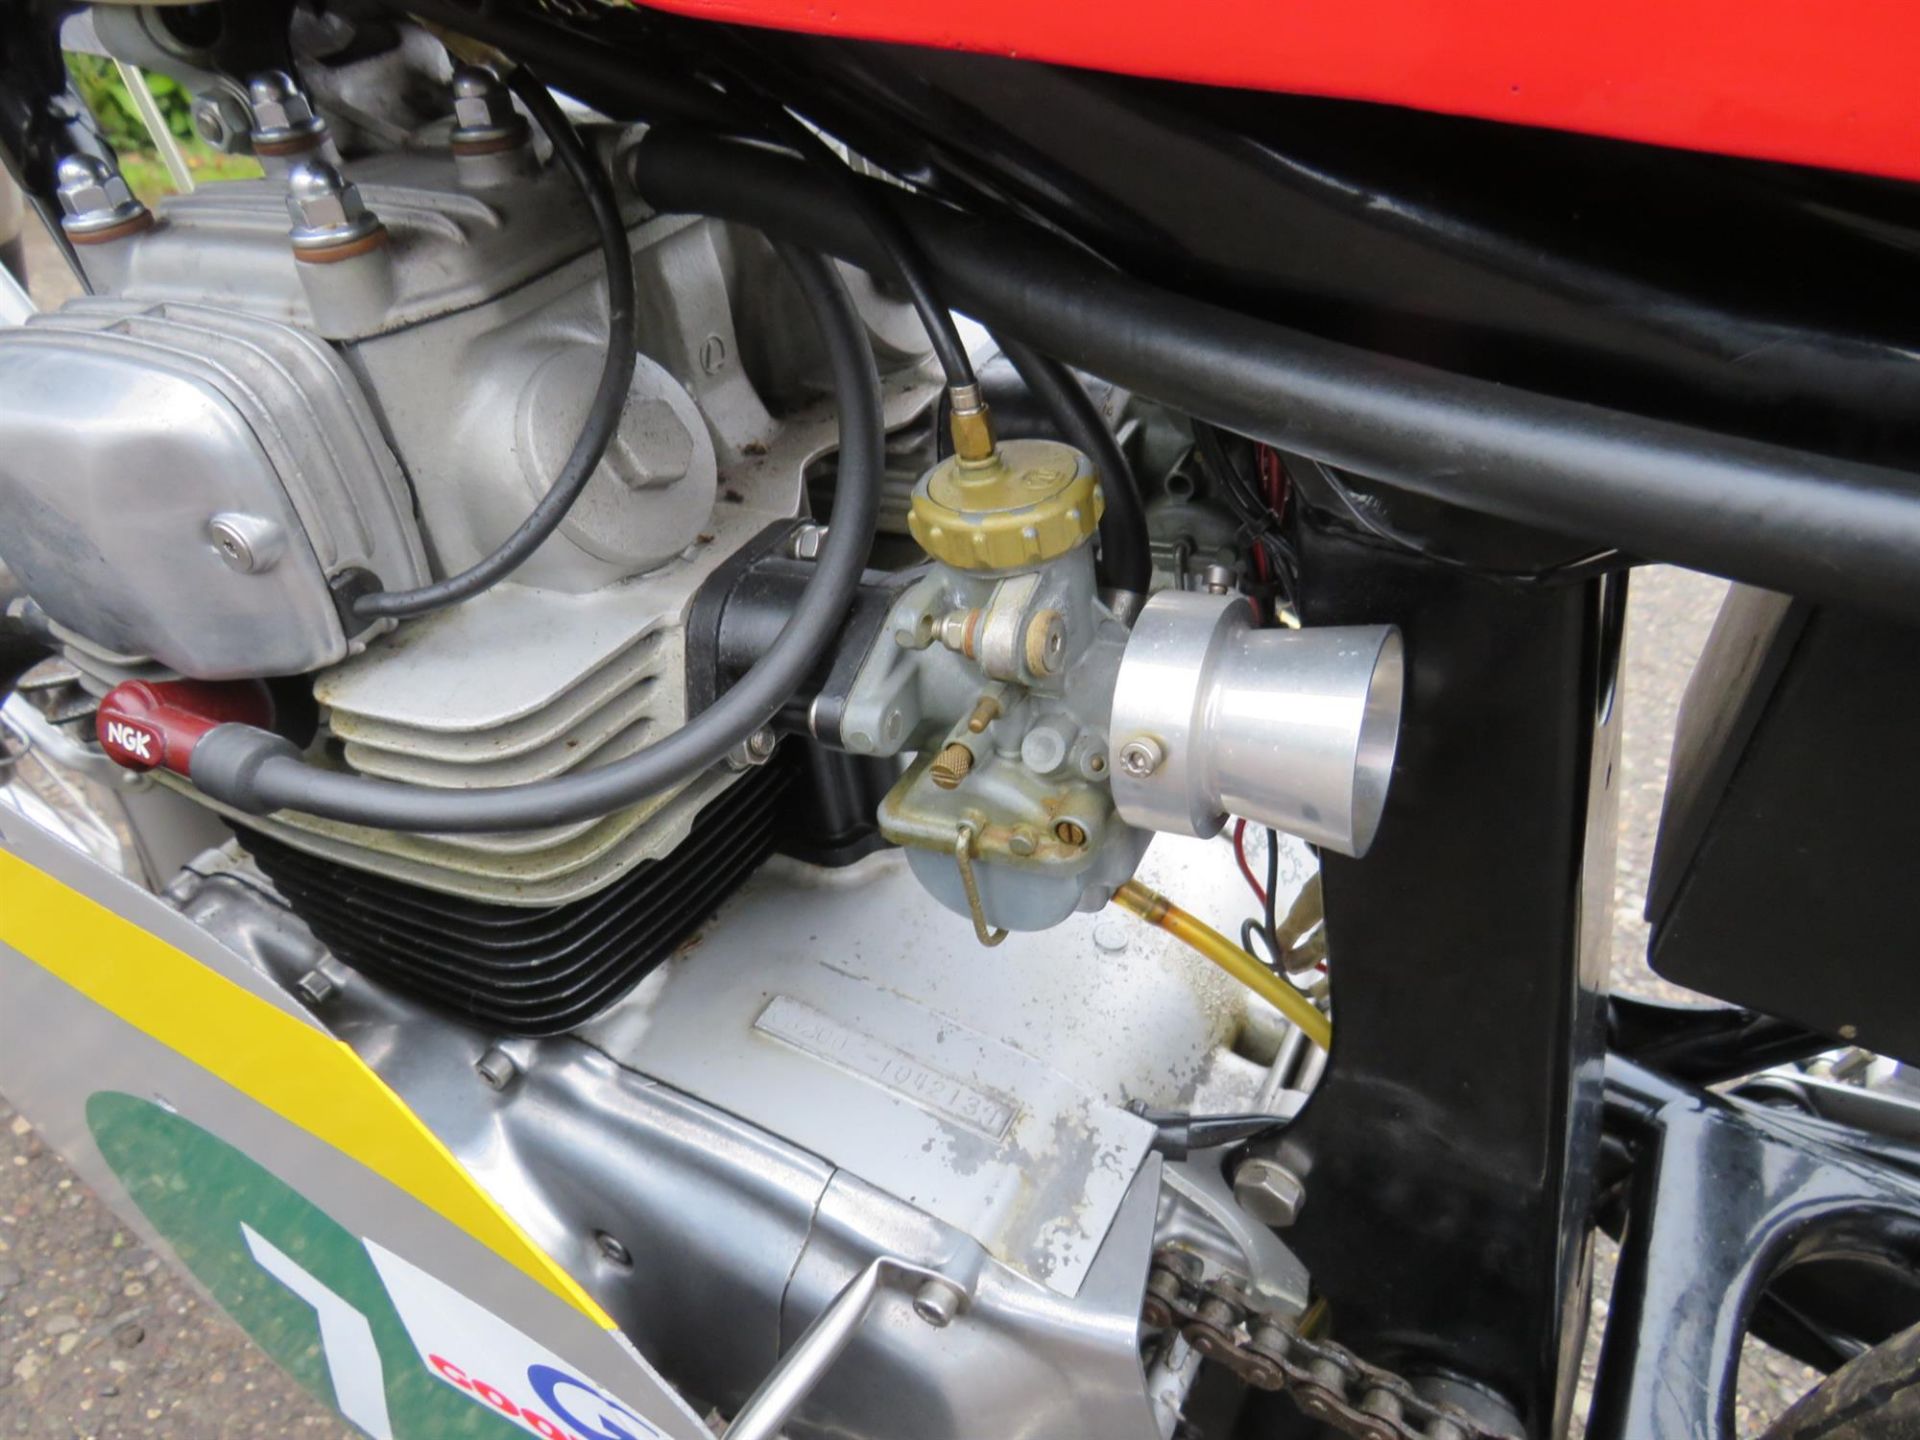 1977 Honda CB200 'RC116' Replica 198cc - Image 6 of 10